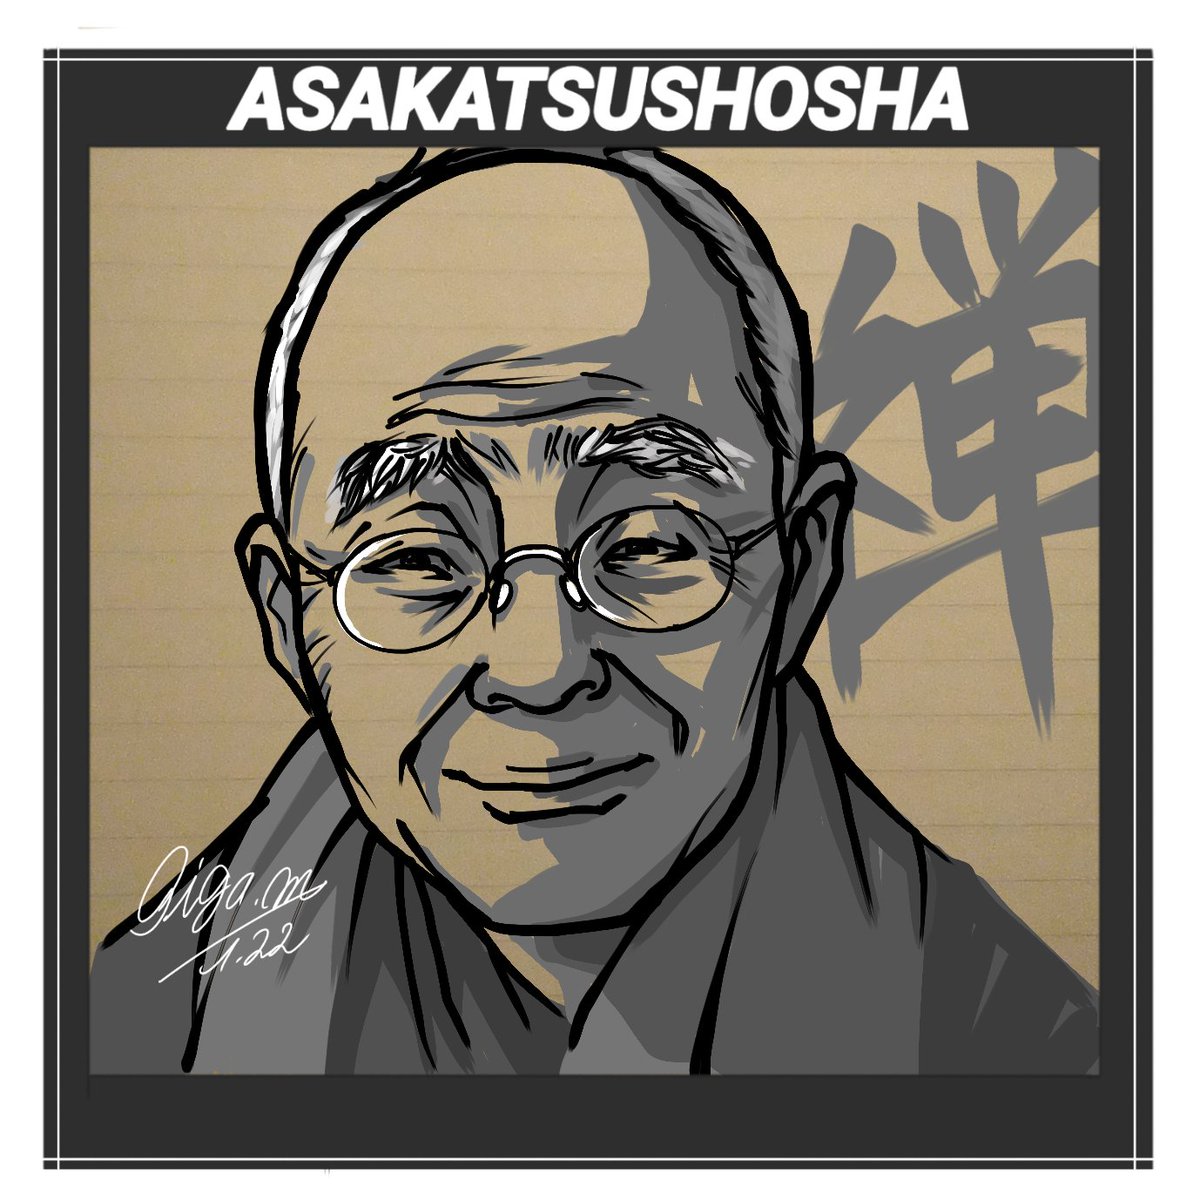 今日は、日本の仏教、禅(ZEN)思想を世界にひろめ紹介しました、「近代日本最大の仏教学者」と称されています鈴木大拙氏です。
#朝活書写 #鈴木大拙 #みんなで楽しむTwitter展覧会 